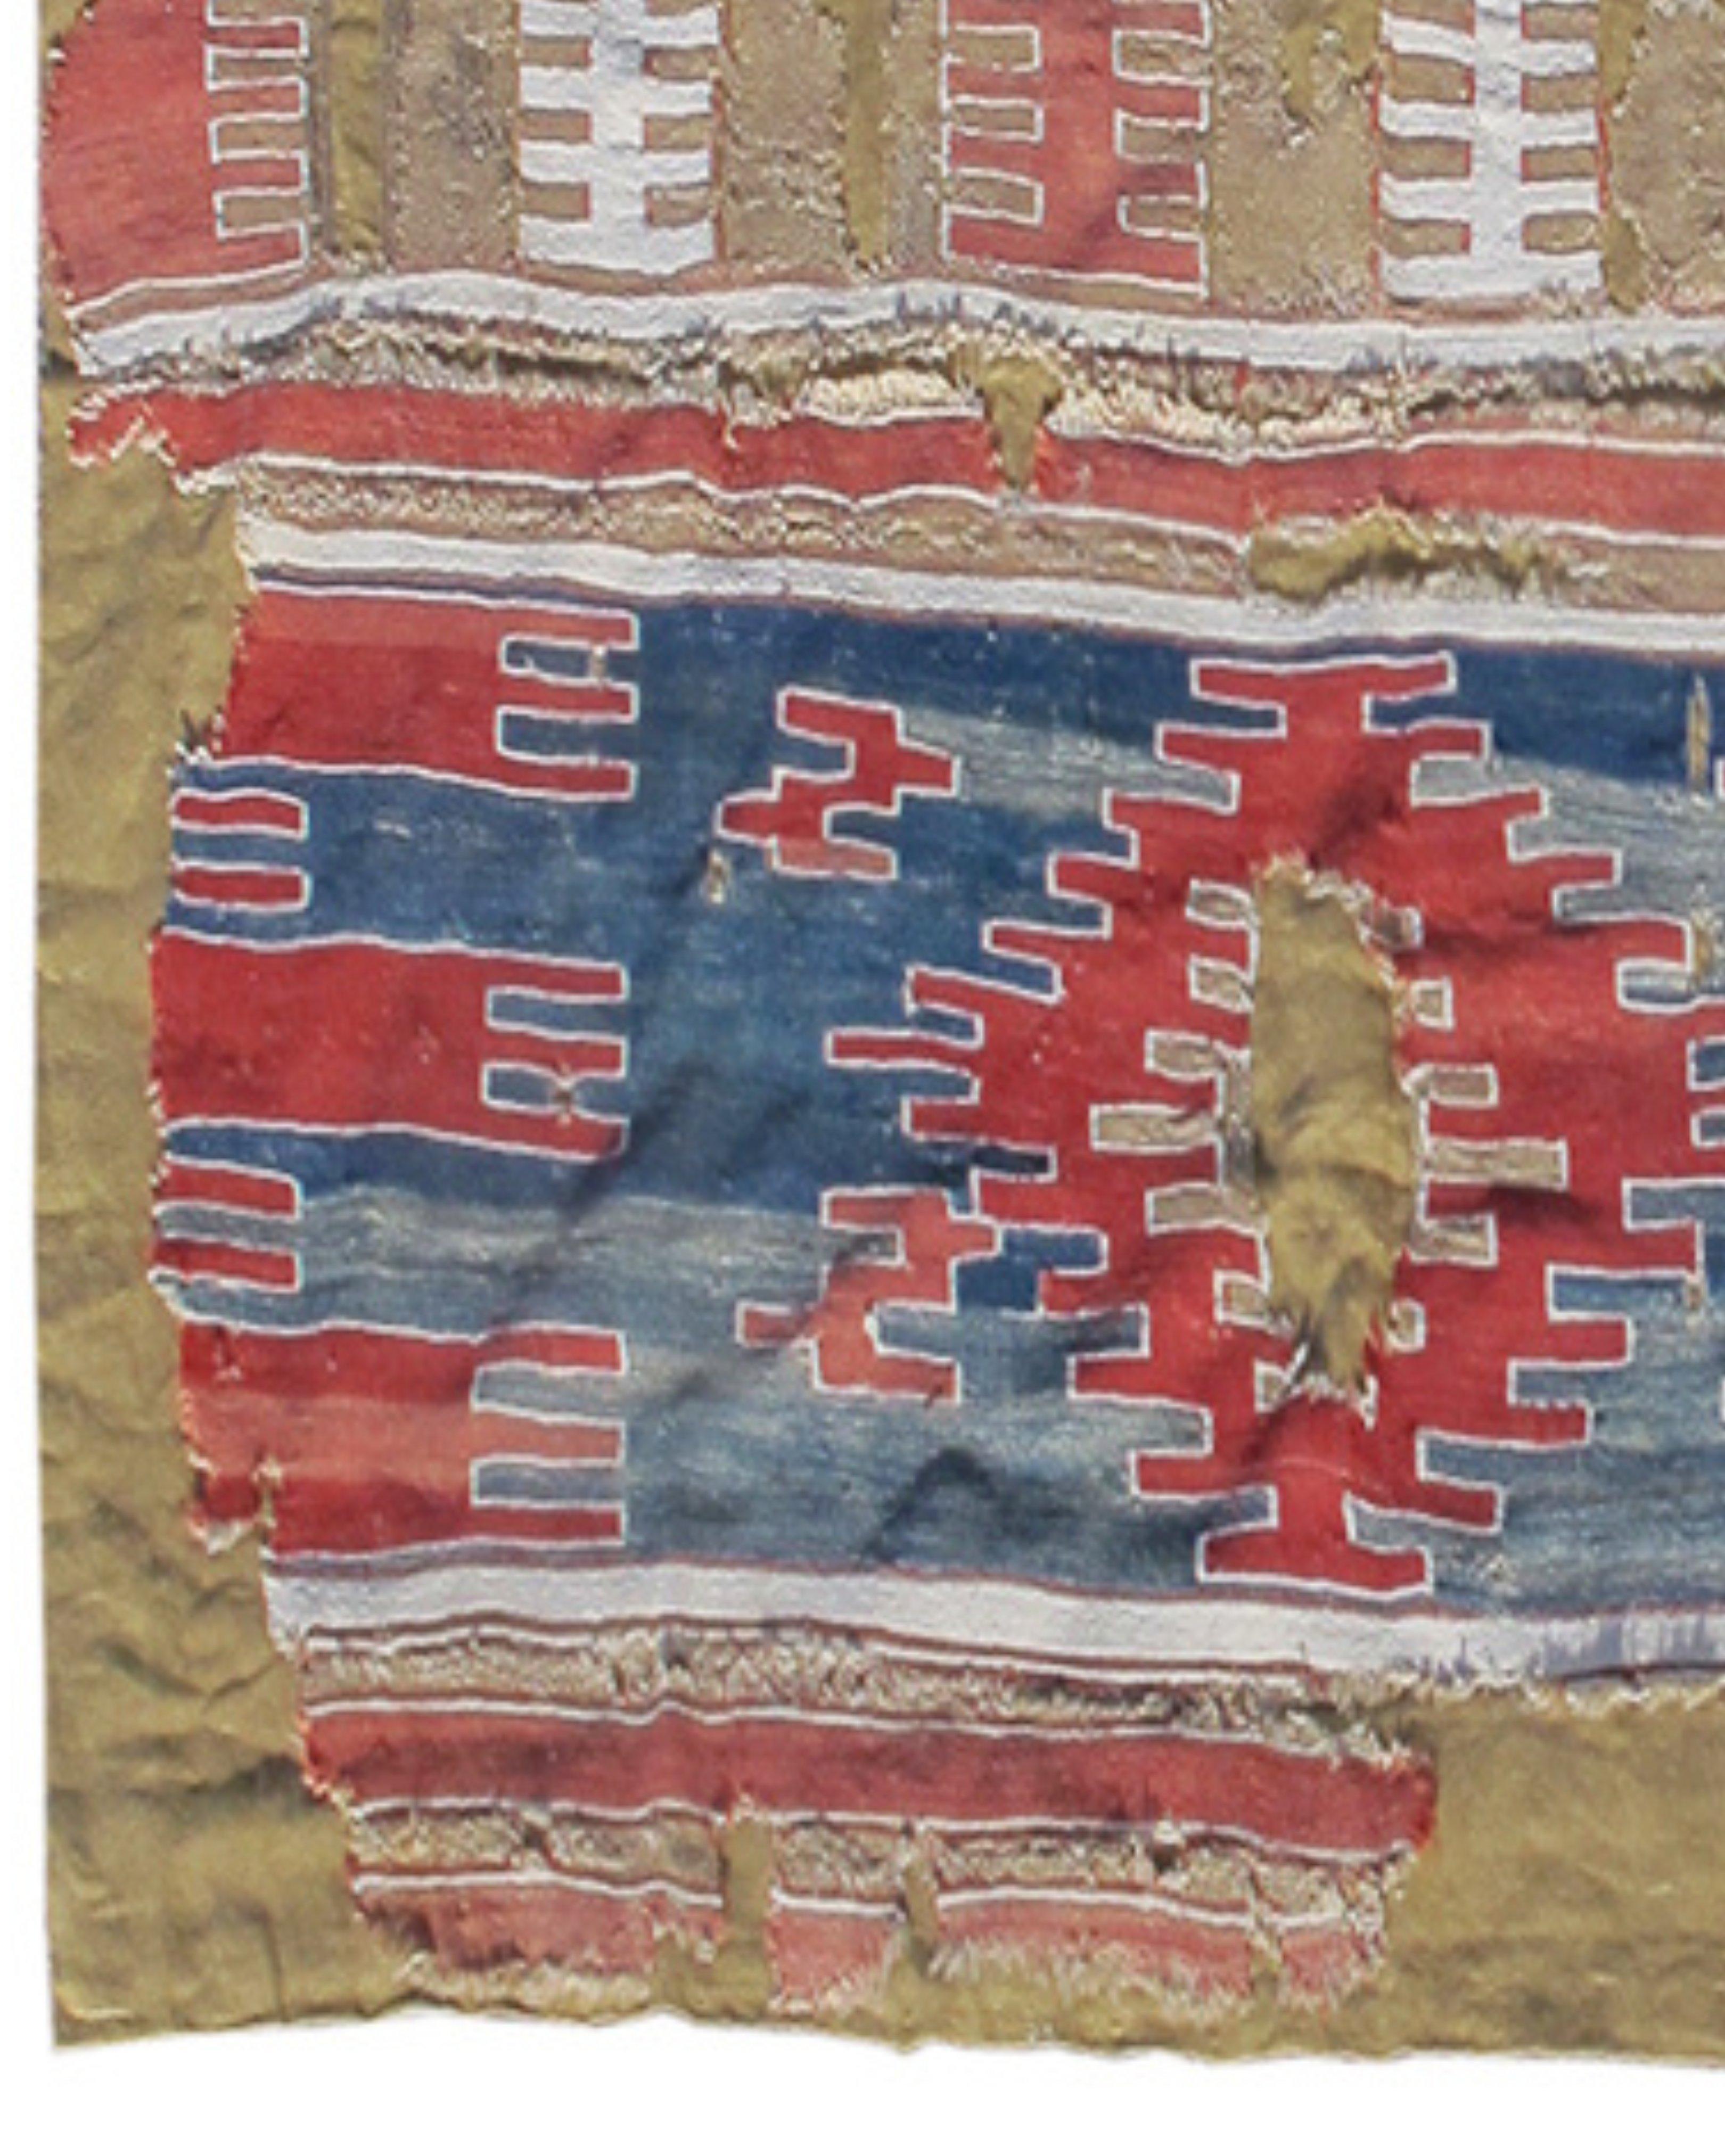 Antiker westanatolischer Kilim-Teppich, um 1700

Frühe anatolische Kelims haben eine einzigartige und überzeugende grafische Qualität. Dieser Kelim aus der Region Afyon in der Türkei zeichnet große wabenförmige Elemente zwischen schmale Streifen.